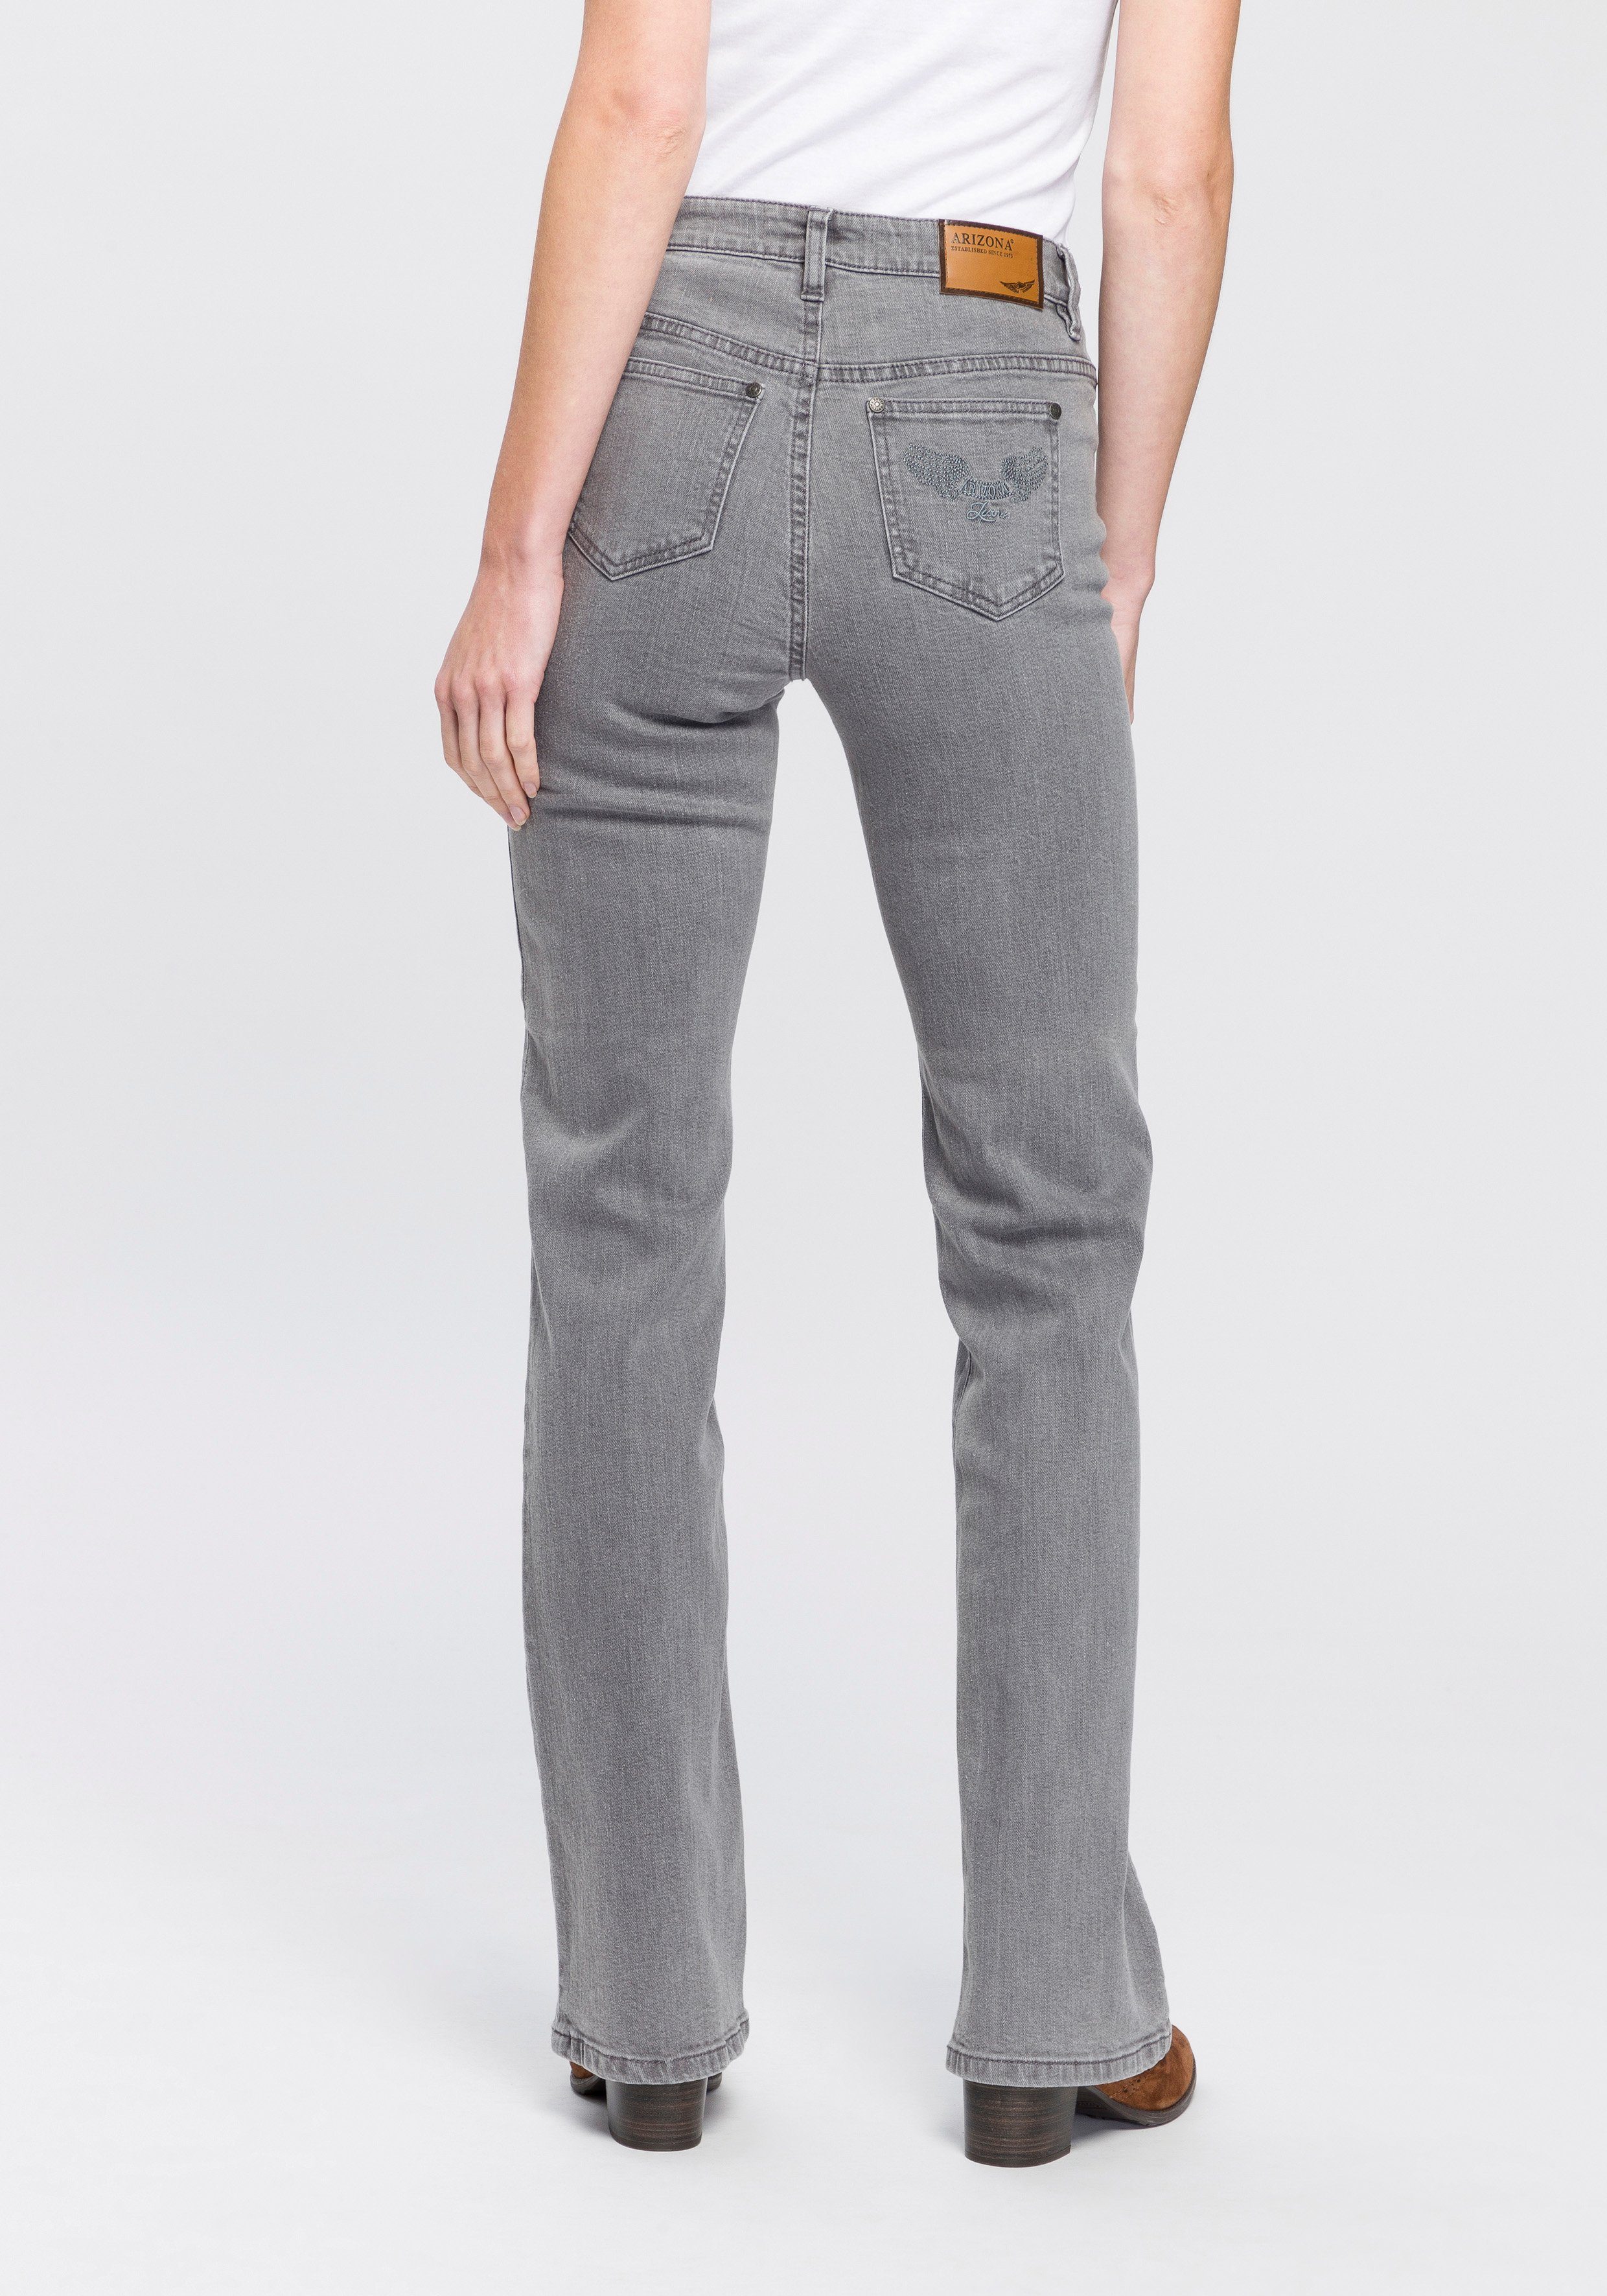 Graue High Waist Jeans für Damen online kaufen | OTTO